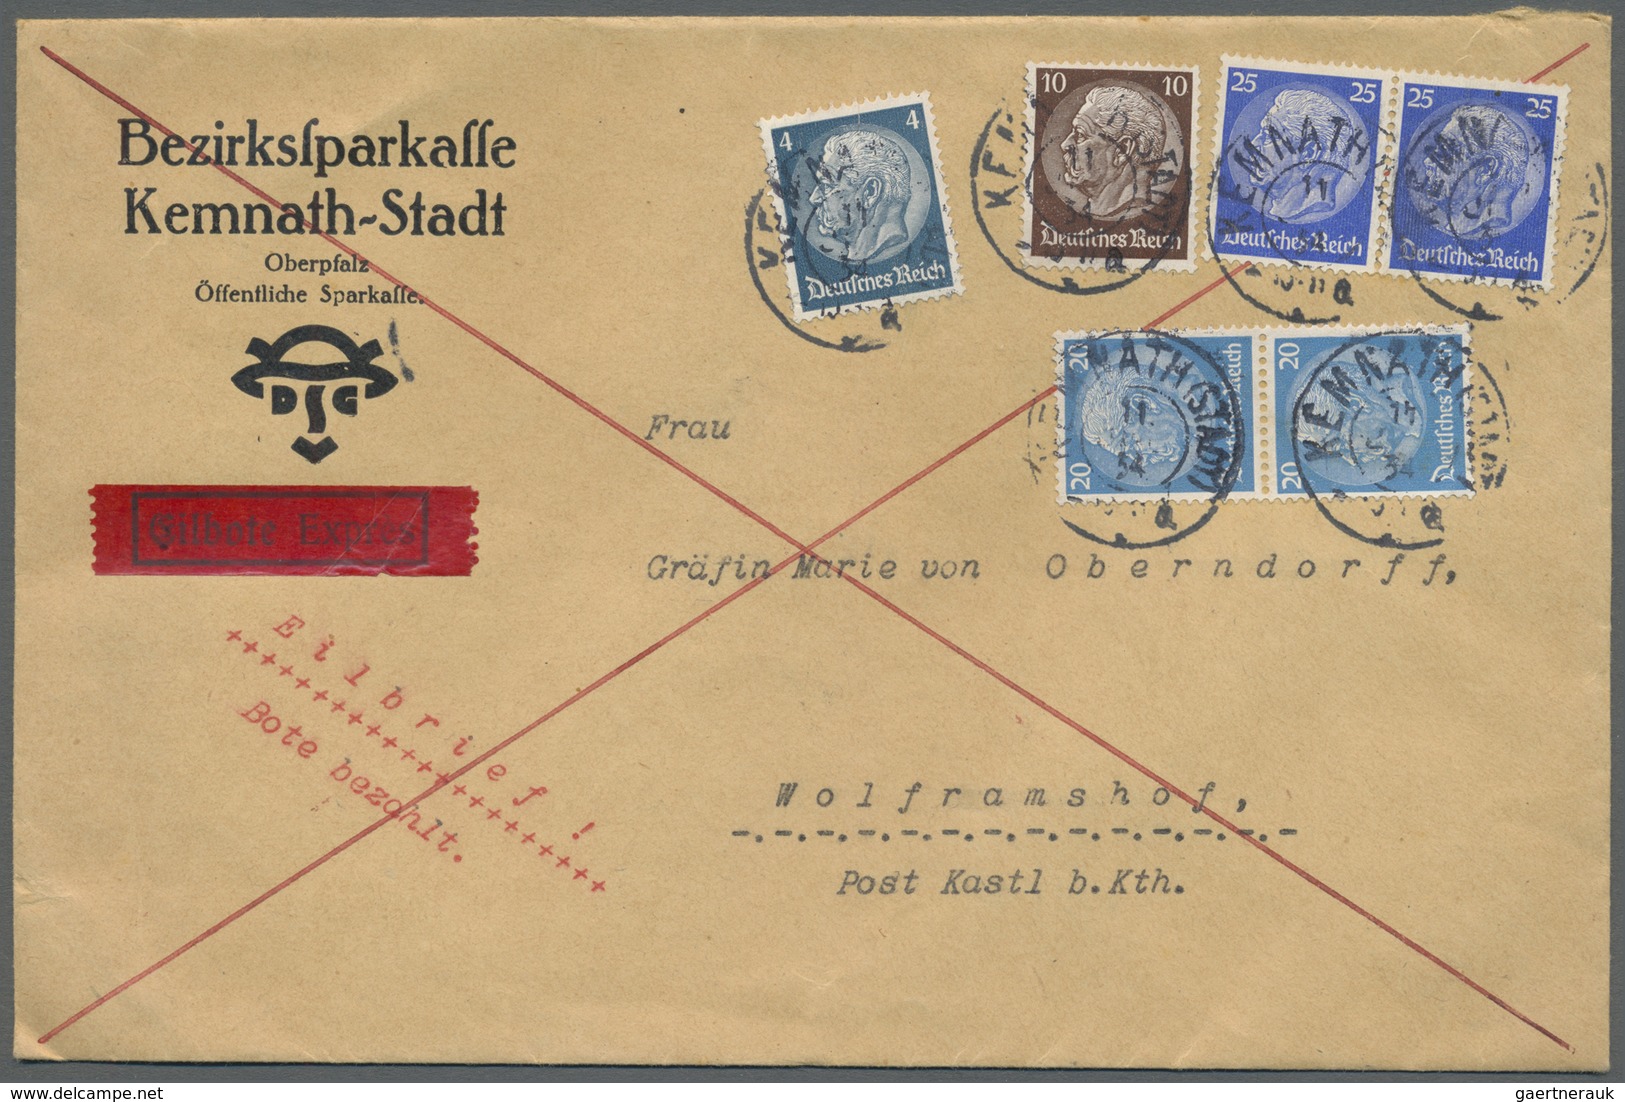 Br Deutsches Reich - 3. Reich: 1934, Eil-Doppelbrief An Die Gräfin Marie Von Oberndorff Nach Wolframsho - Neufs